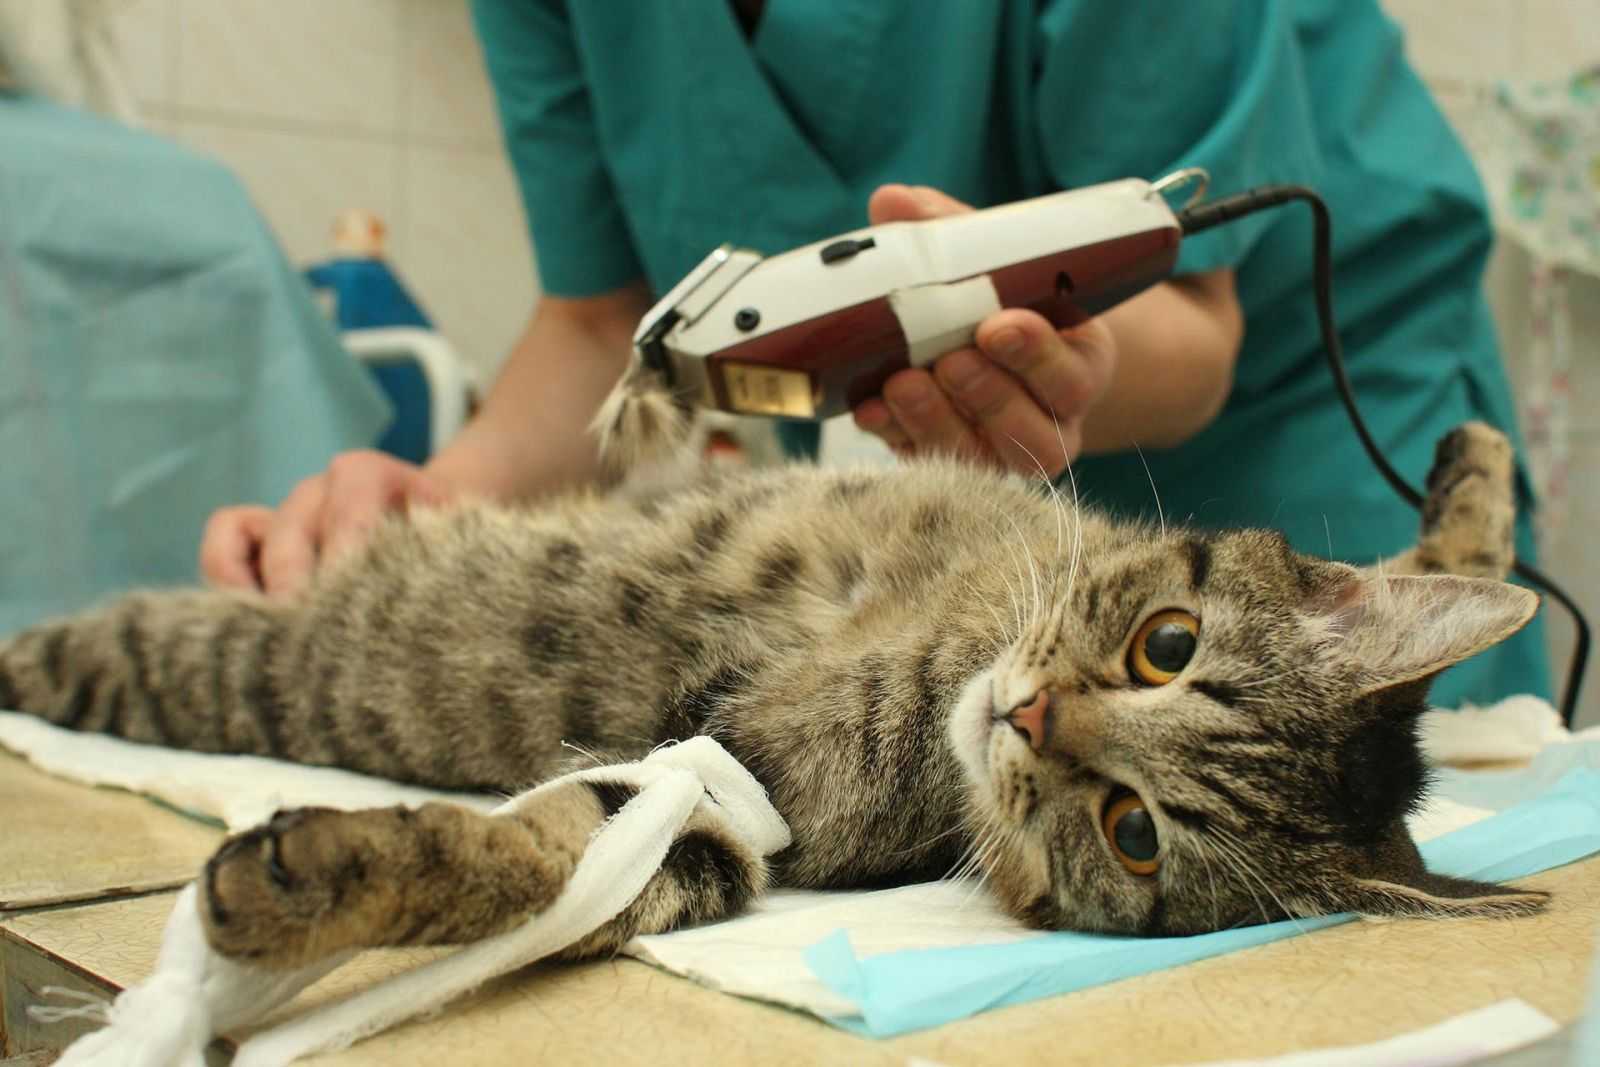 Стоит ли проводить операцию по удалению когтей у кошки и как это может повлиять в дальнейшем на поведение и жизнь домашнего животного